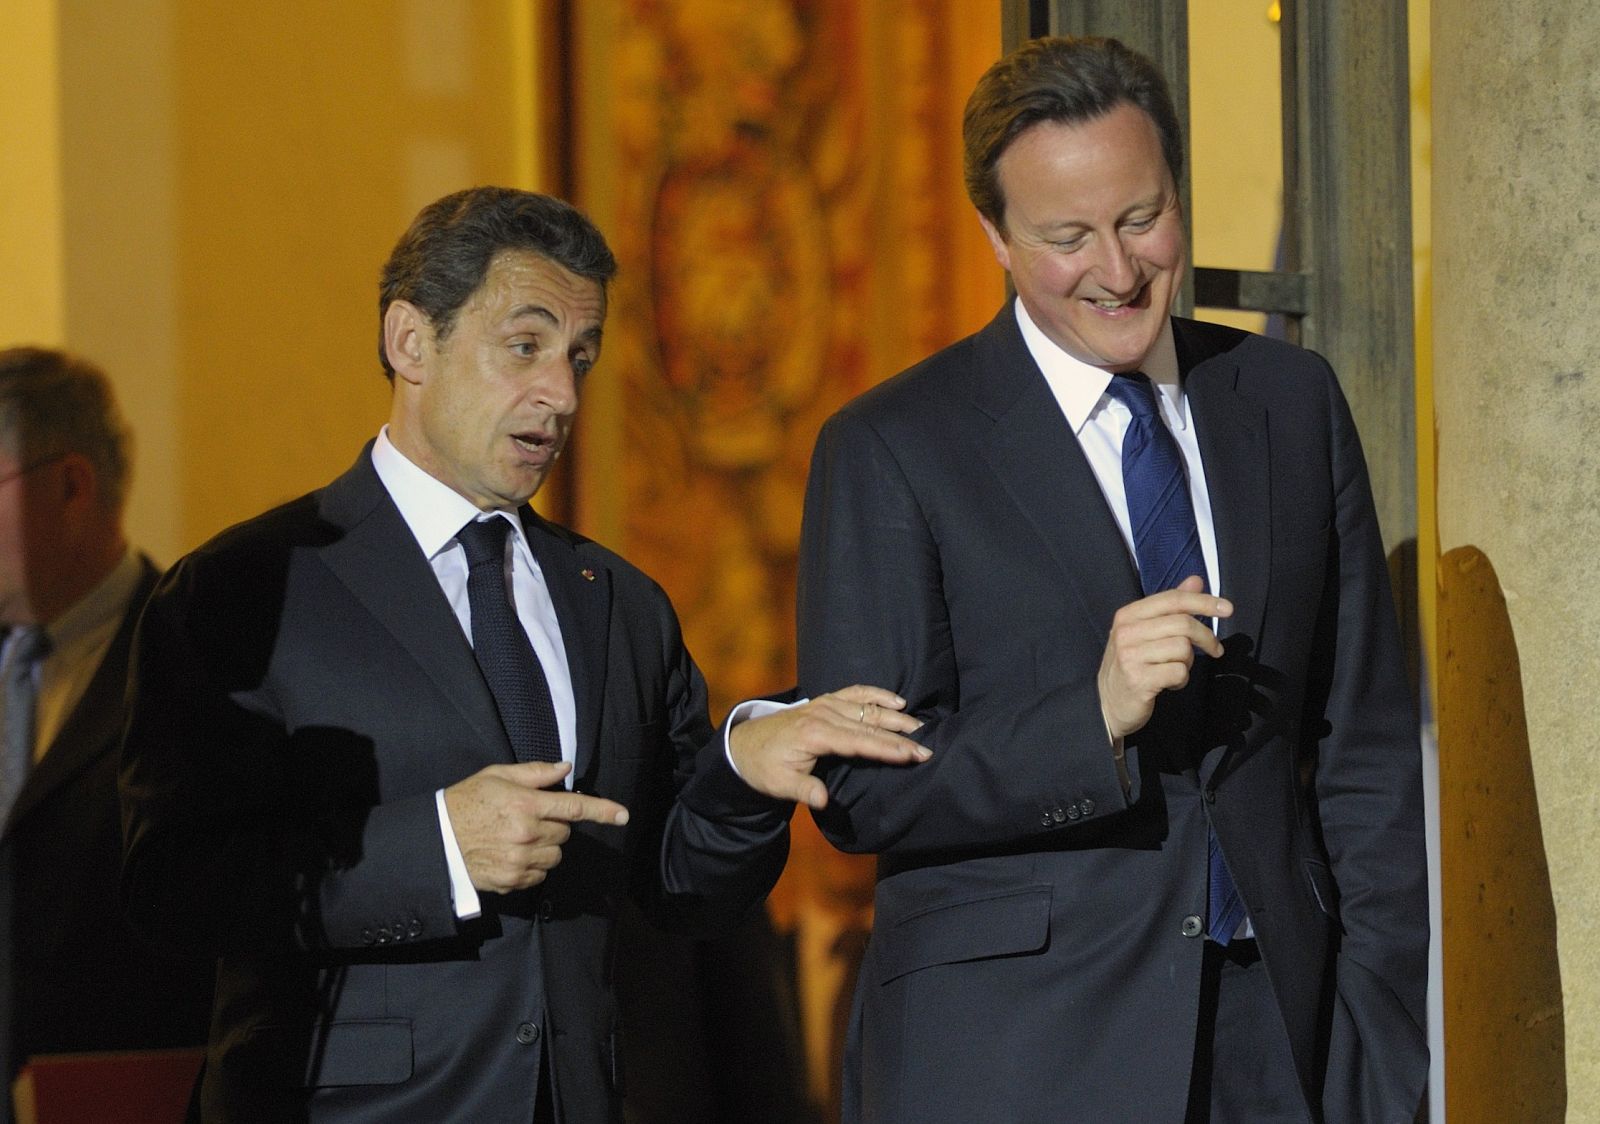 El presidente francés, Nicolás Sarkozy, charla con el primer ministro británico, David Cameron, en las escaleras del Elíseo